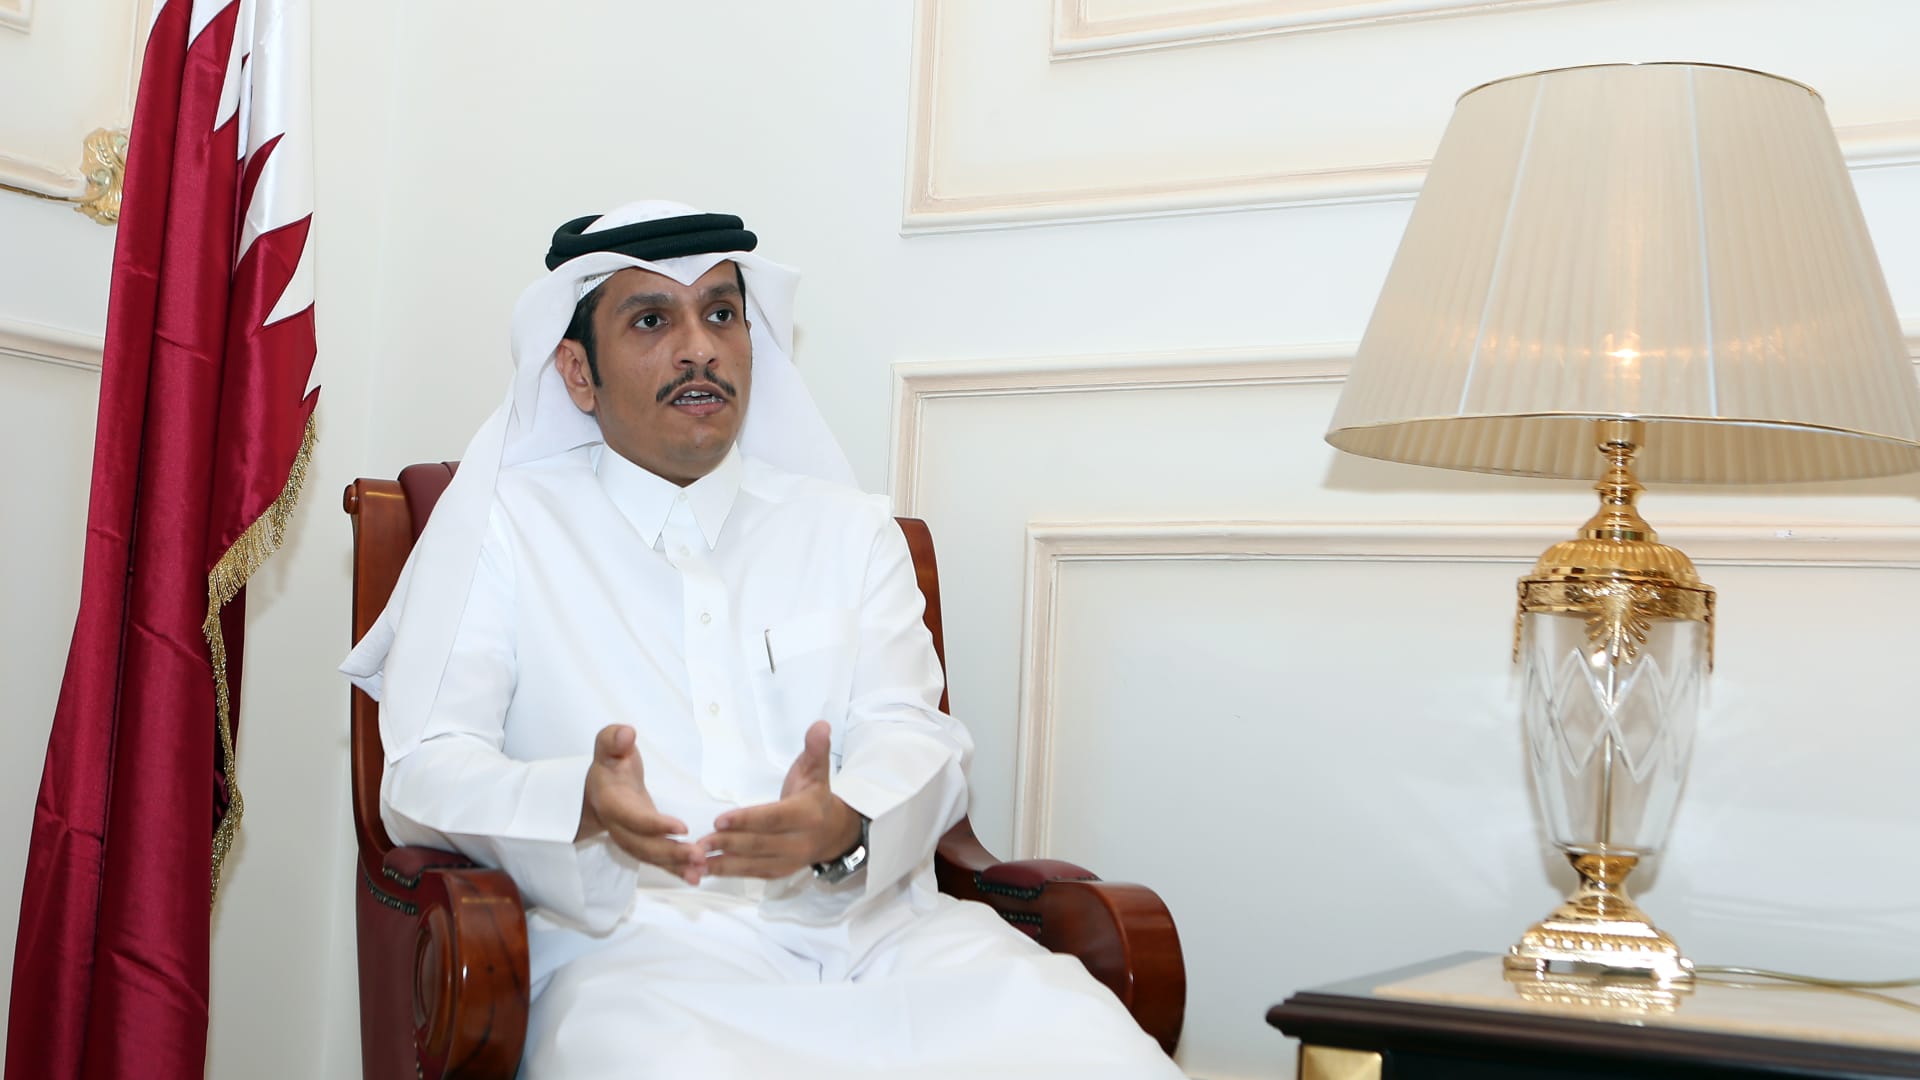 وزير خارجية قطر يبين لـCNN ما يعتقد أنه سبب "الحصار"